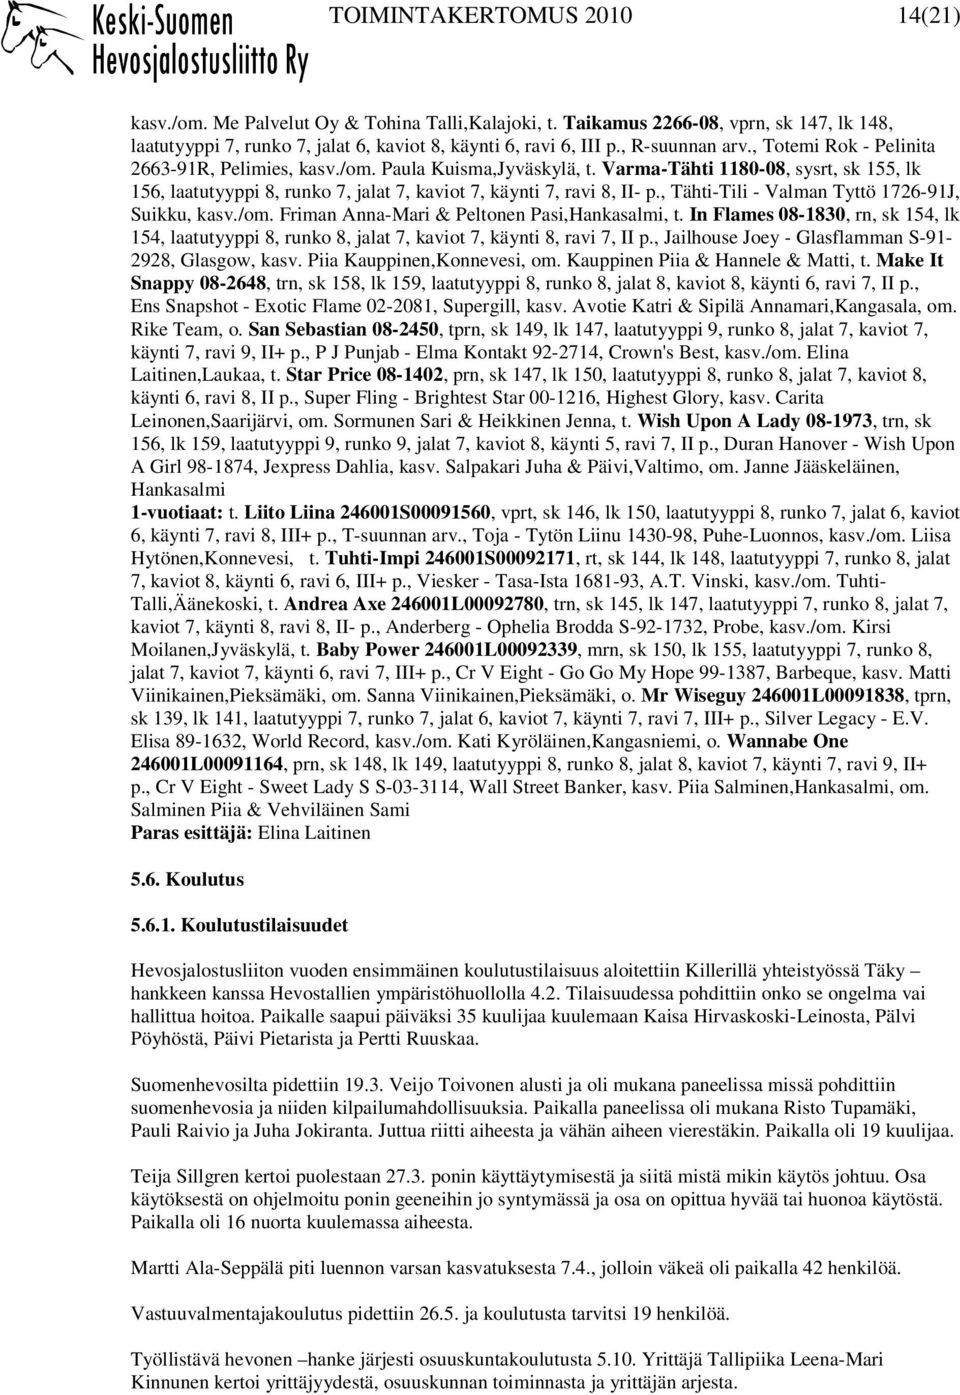 Varma-Tähti 1180-08, sysrt, sk 155, lk 156, laatutyyppi 8, runko 7, jalat 7, kaviot 7, käynti 7, ravi 8, II- p., Tähti-Tili - Valman Tyttö 1726-91J, Suikku, kasv./om.